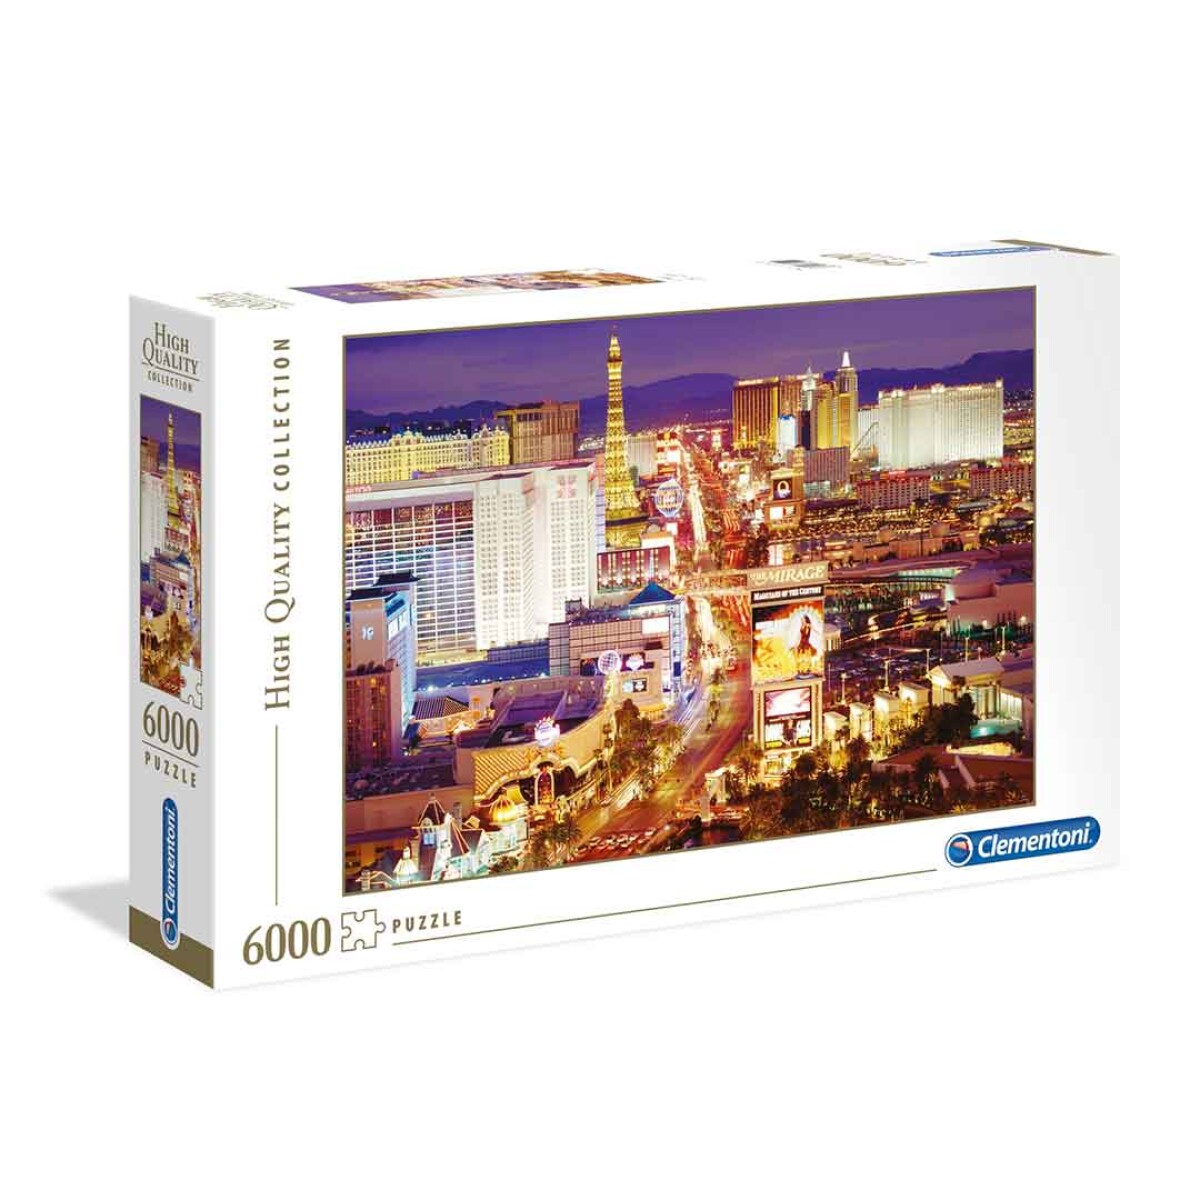 Puzzle Clementoni 6000 piezas Las Vegas High Quality - 001 